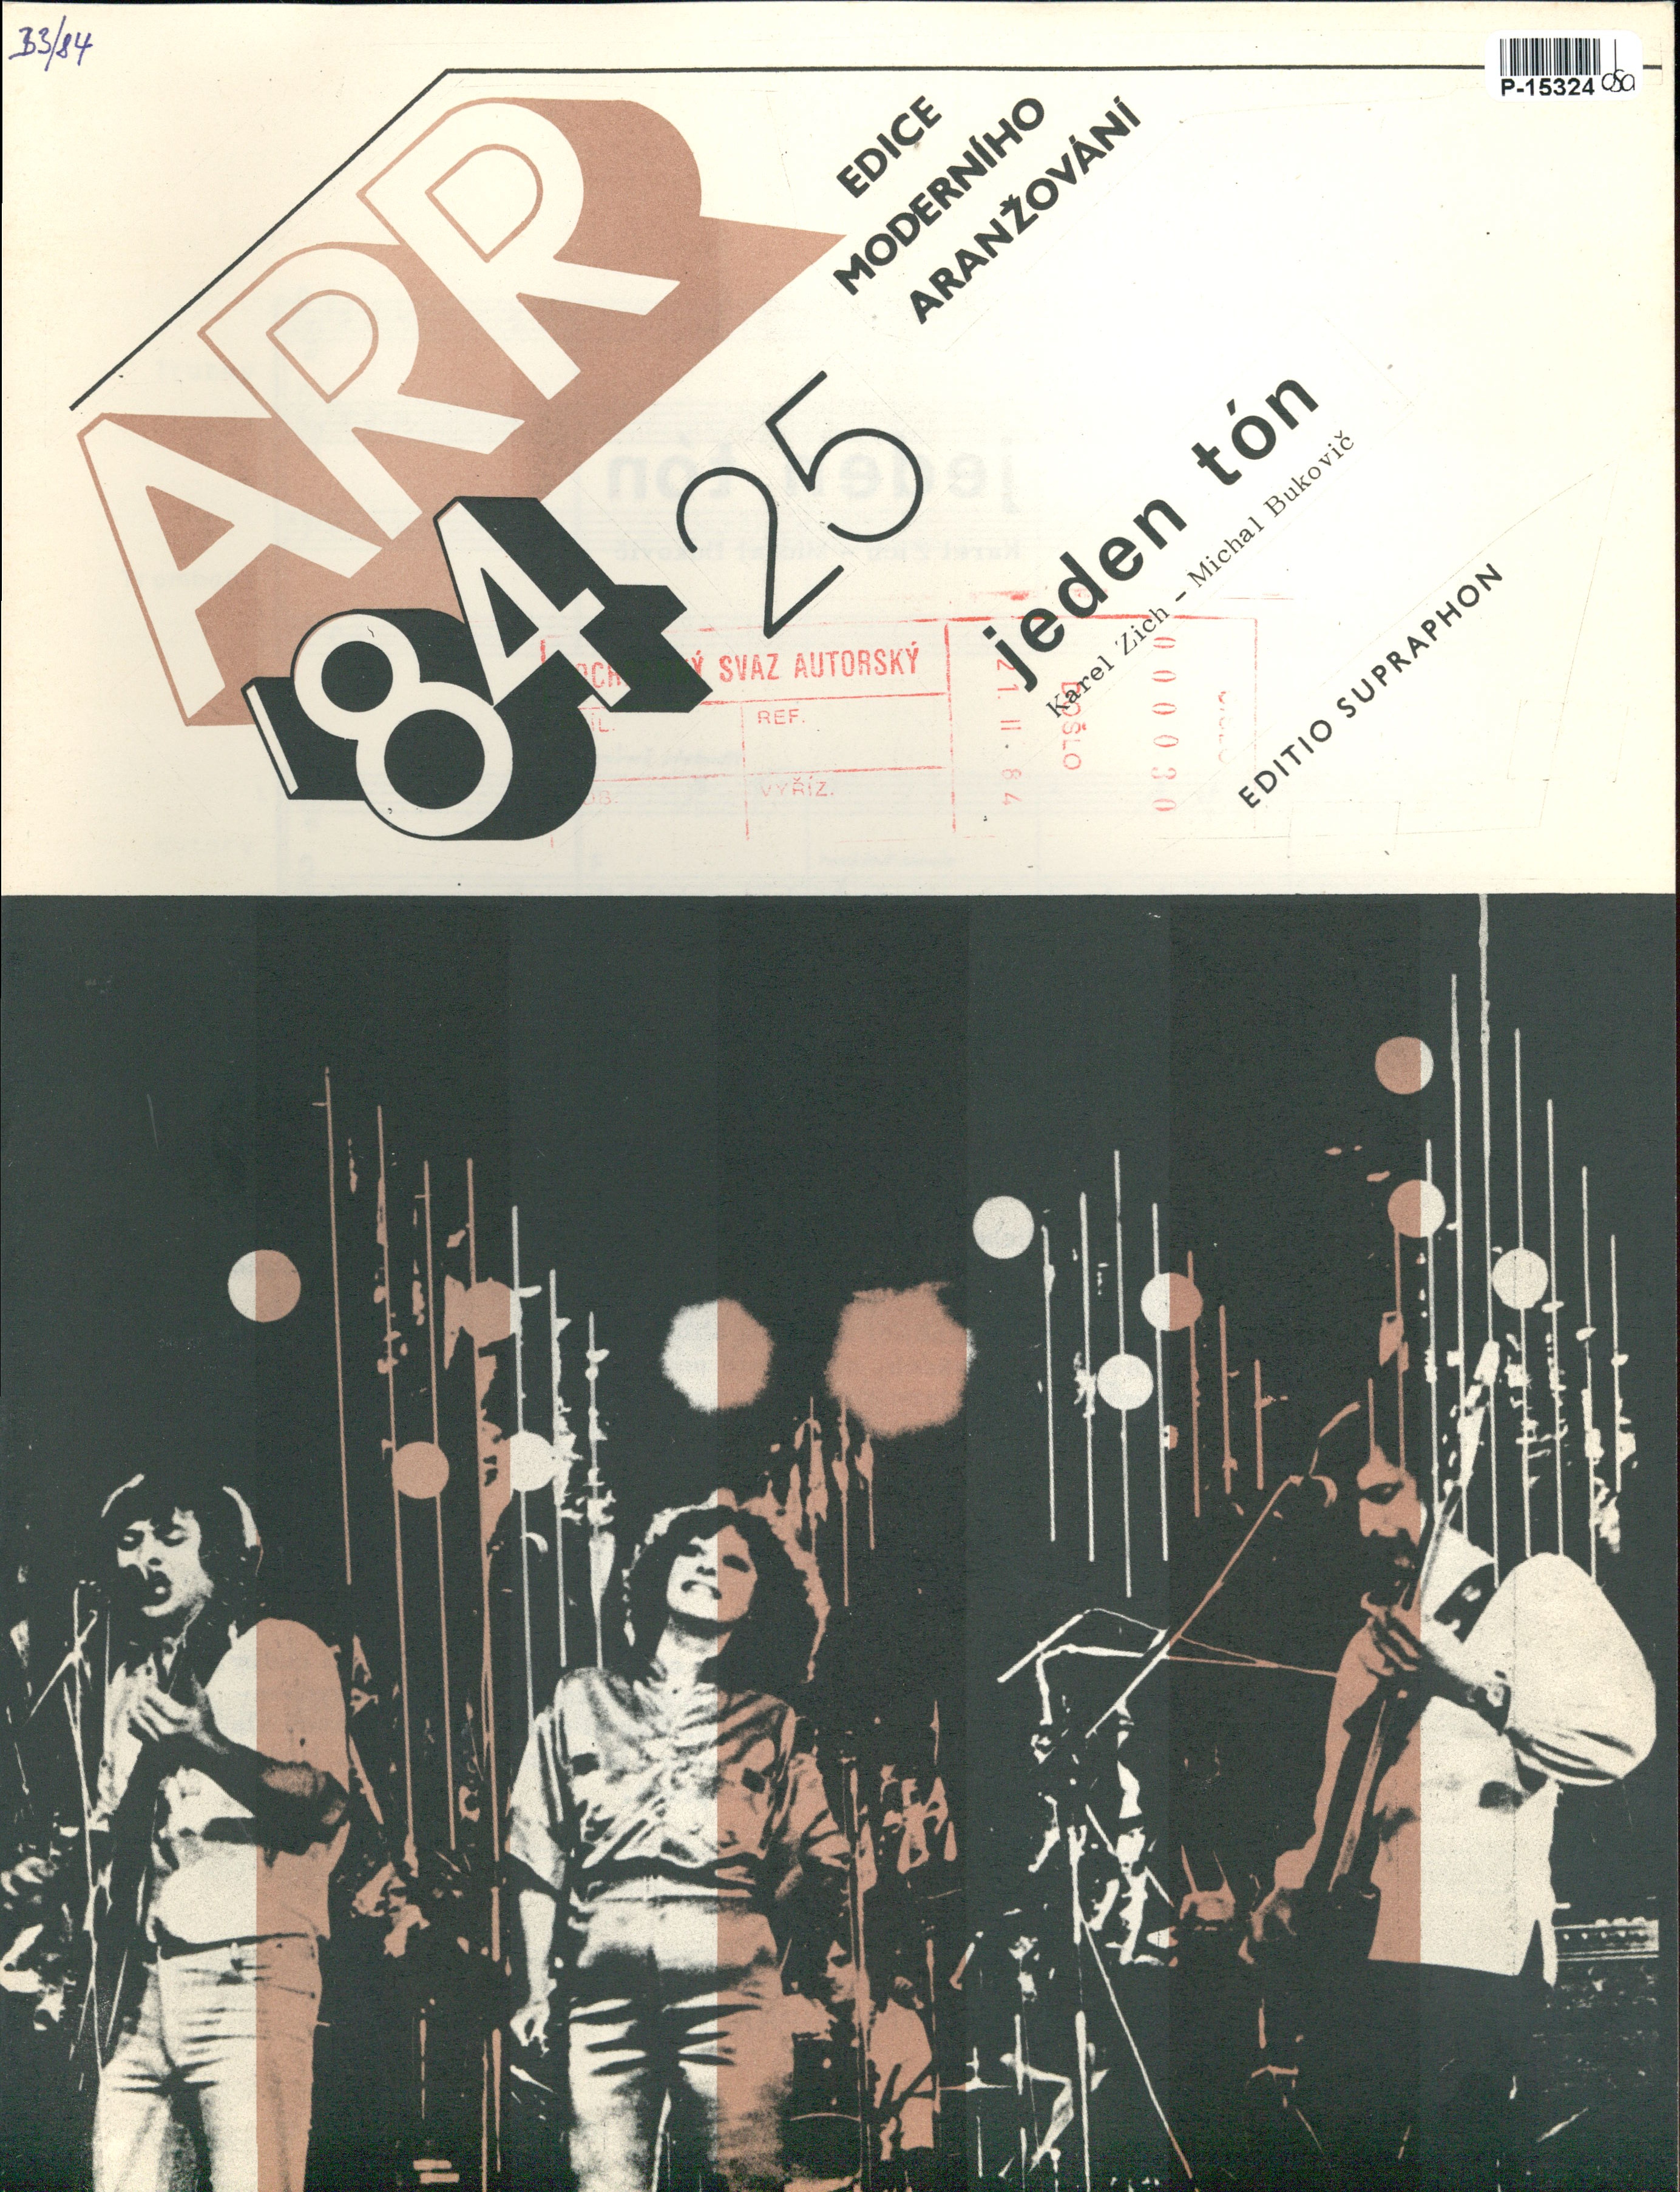 ARR '84 - Edice moderního aražování 25